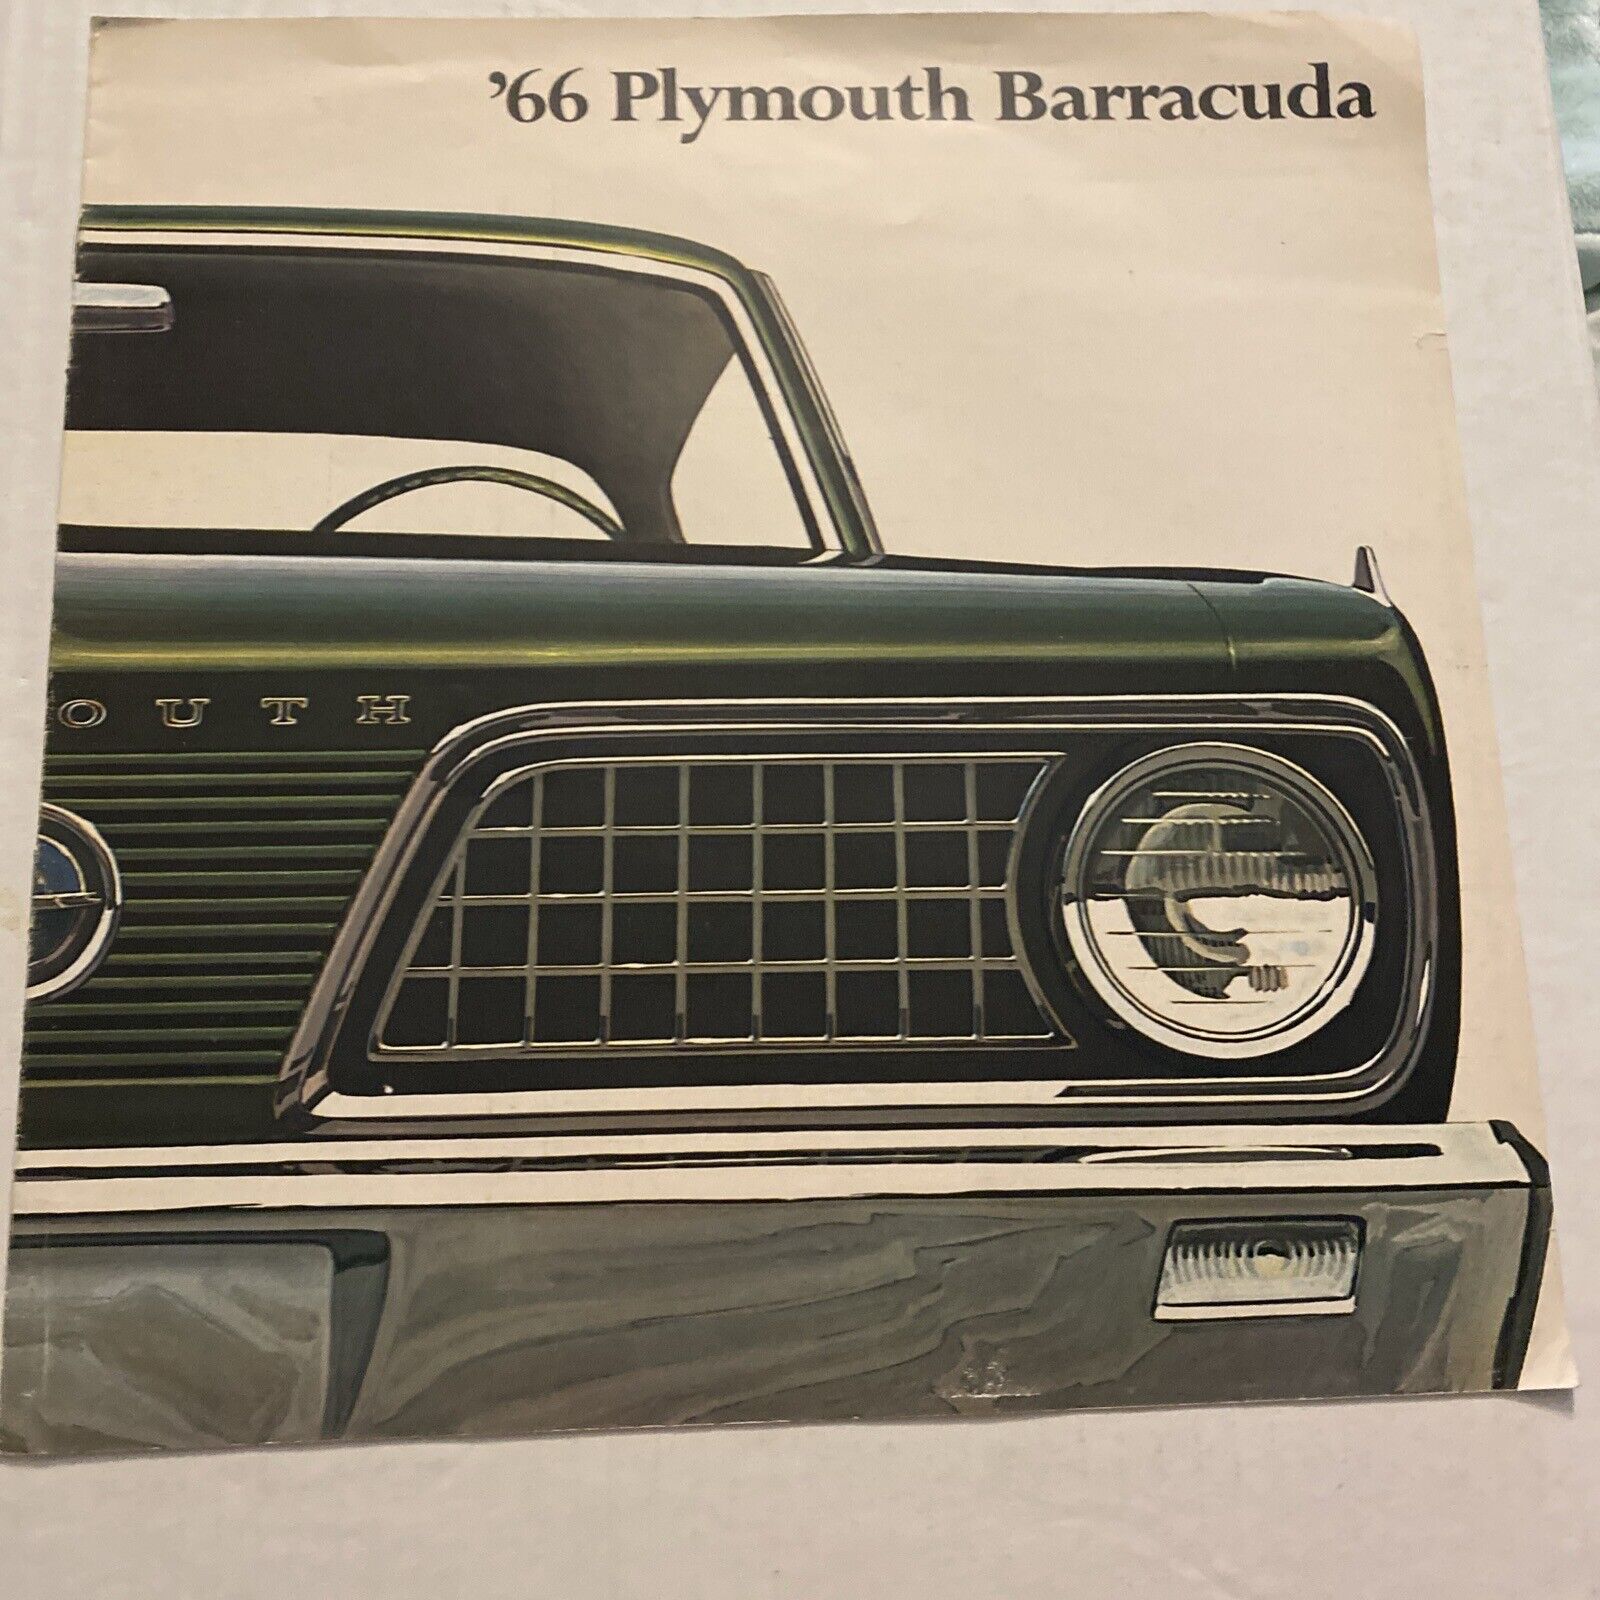 Original 1966 Plymouth Barracuda Formula S Deluxe Dealer Sales Brochure Catalog